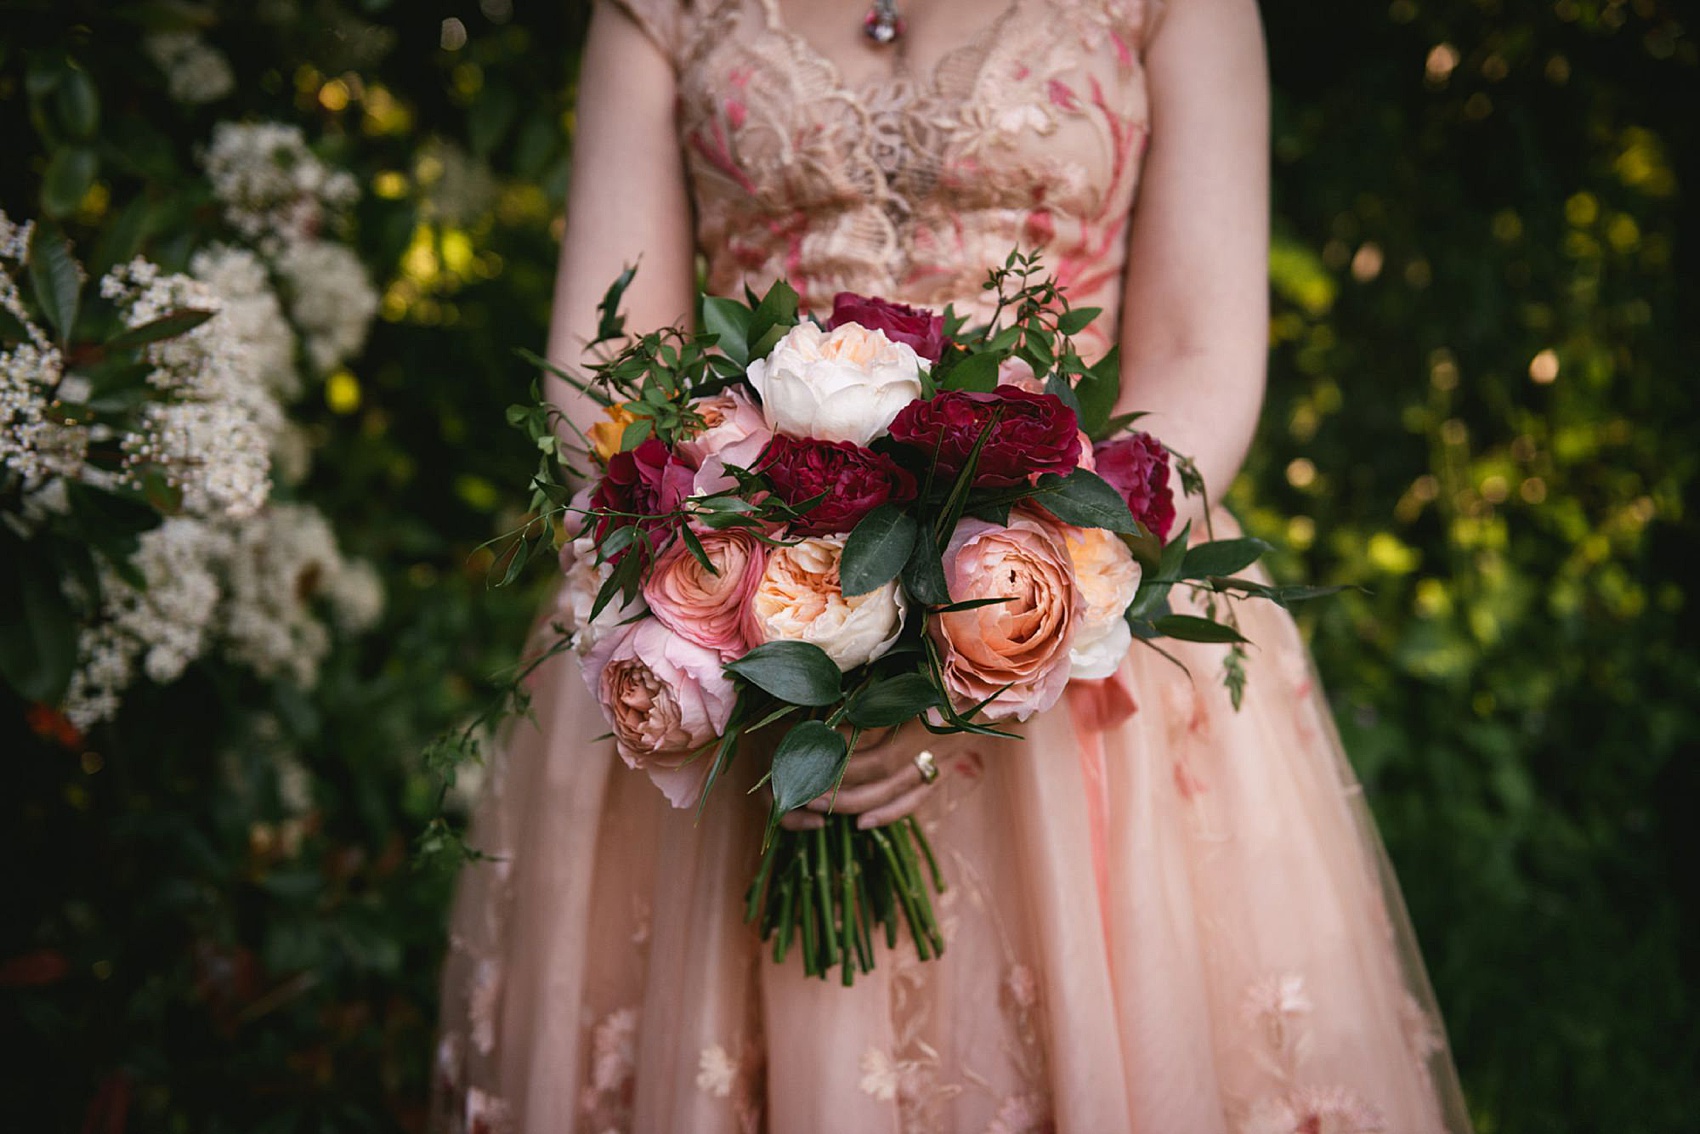 joanne fleming pink dress